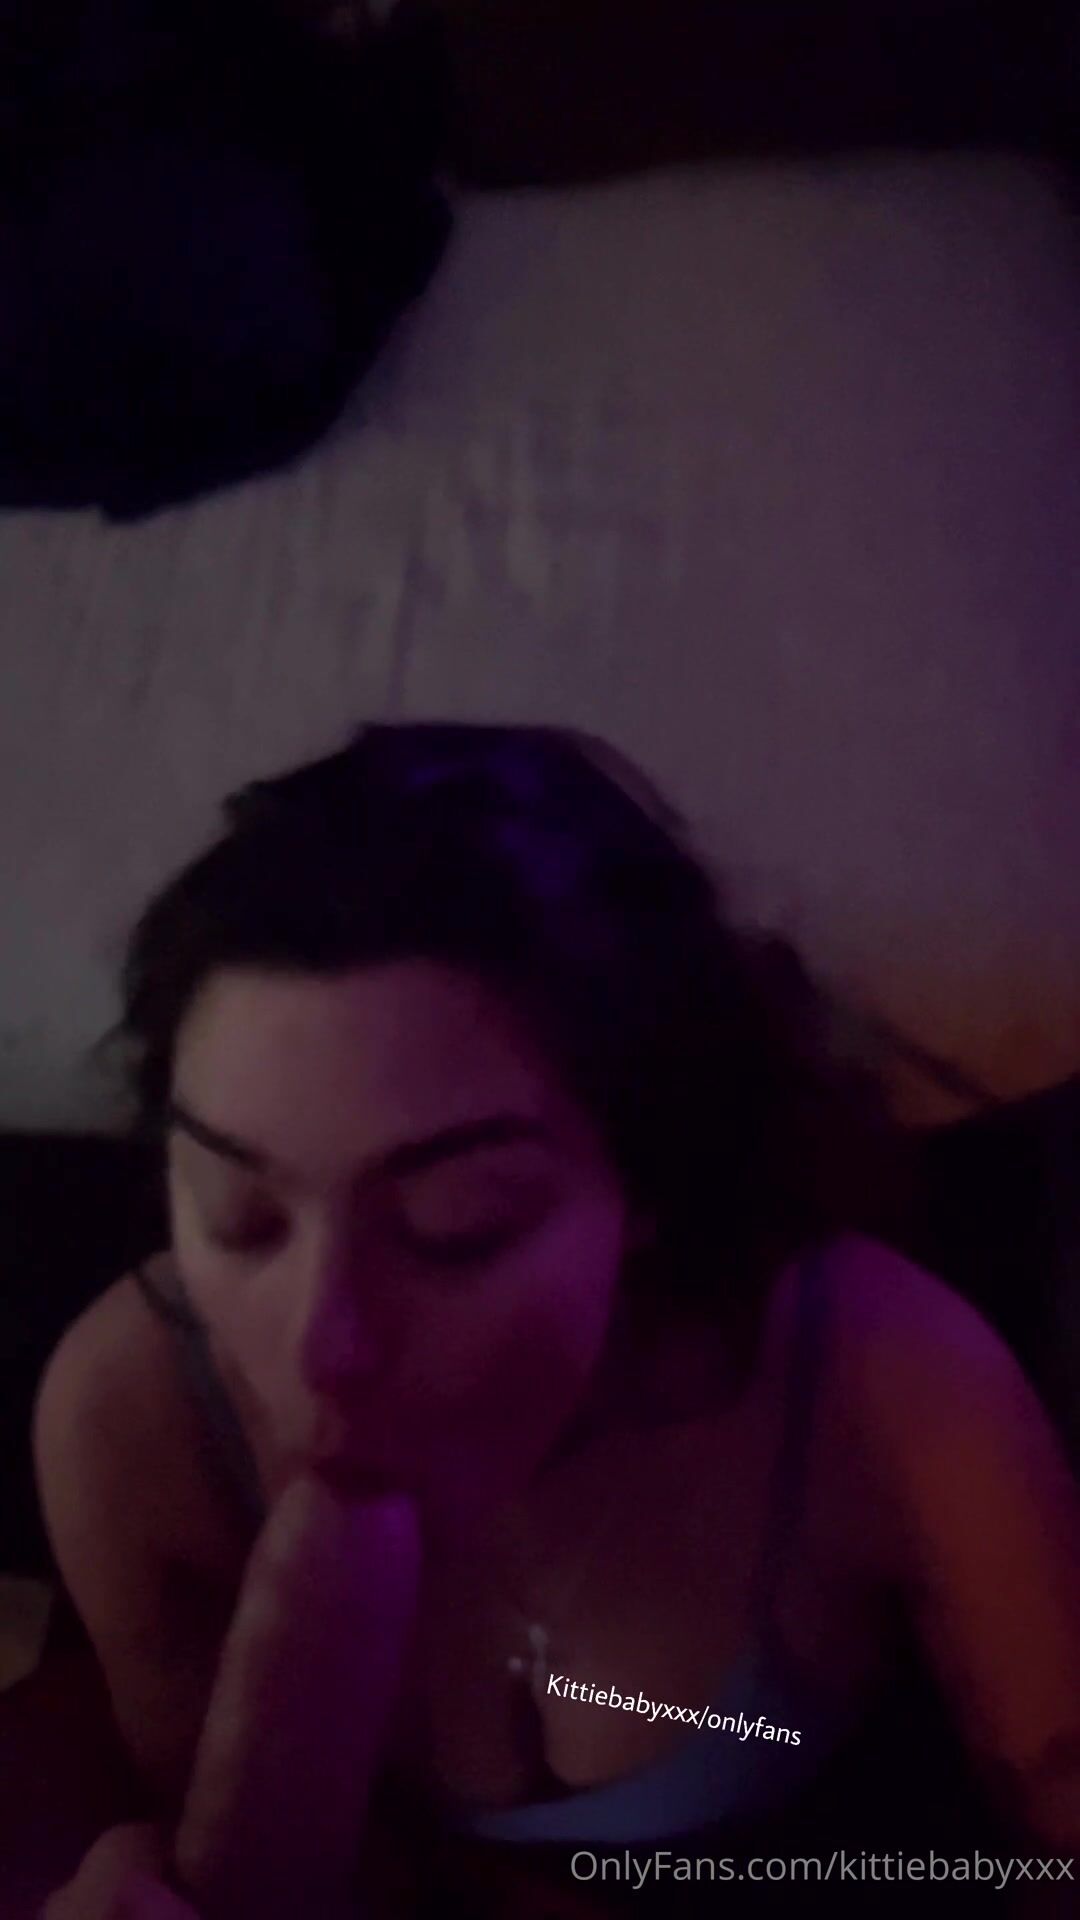 KittiebabyXXX Facial Sex Tape Video Leaked